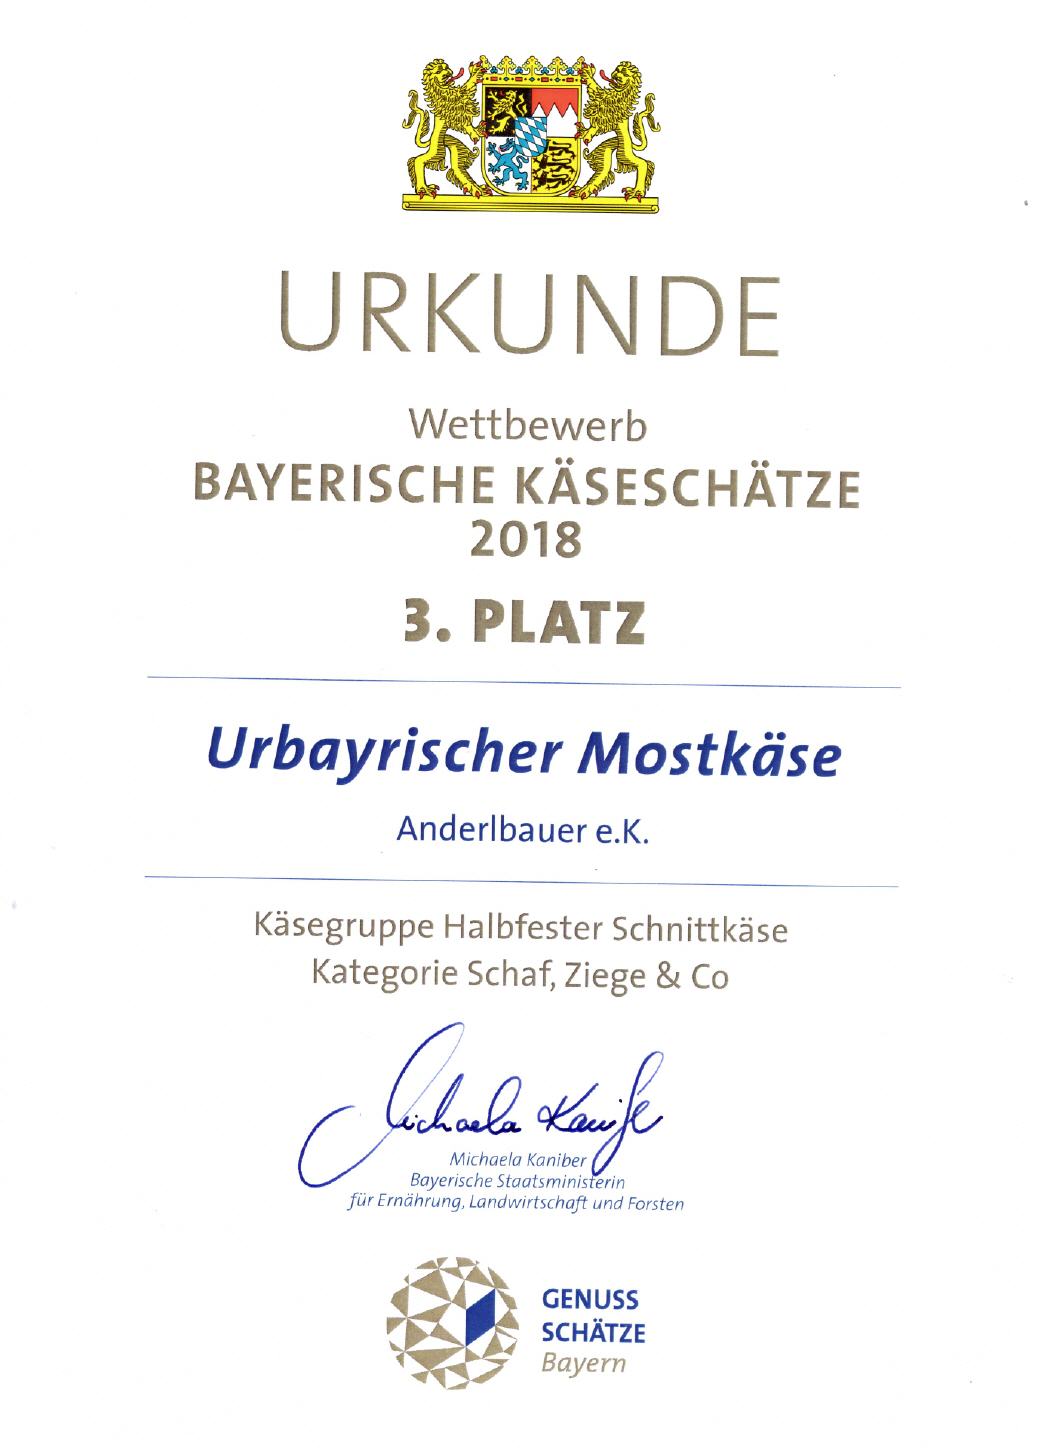 Bayerische Käseschätze 2018